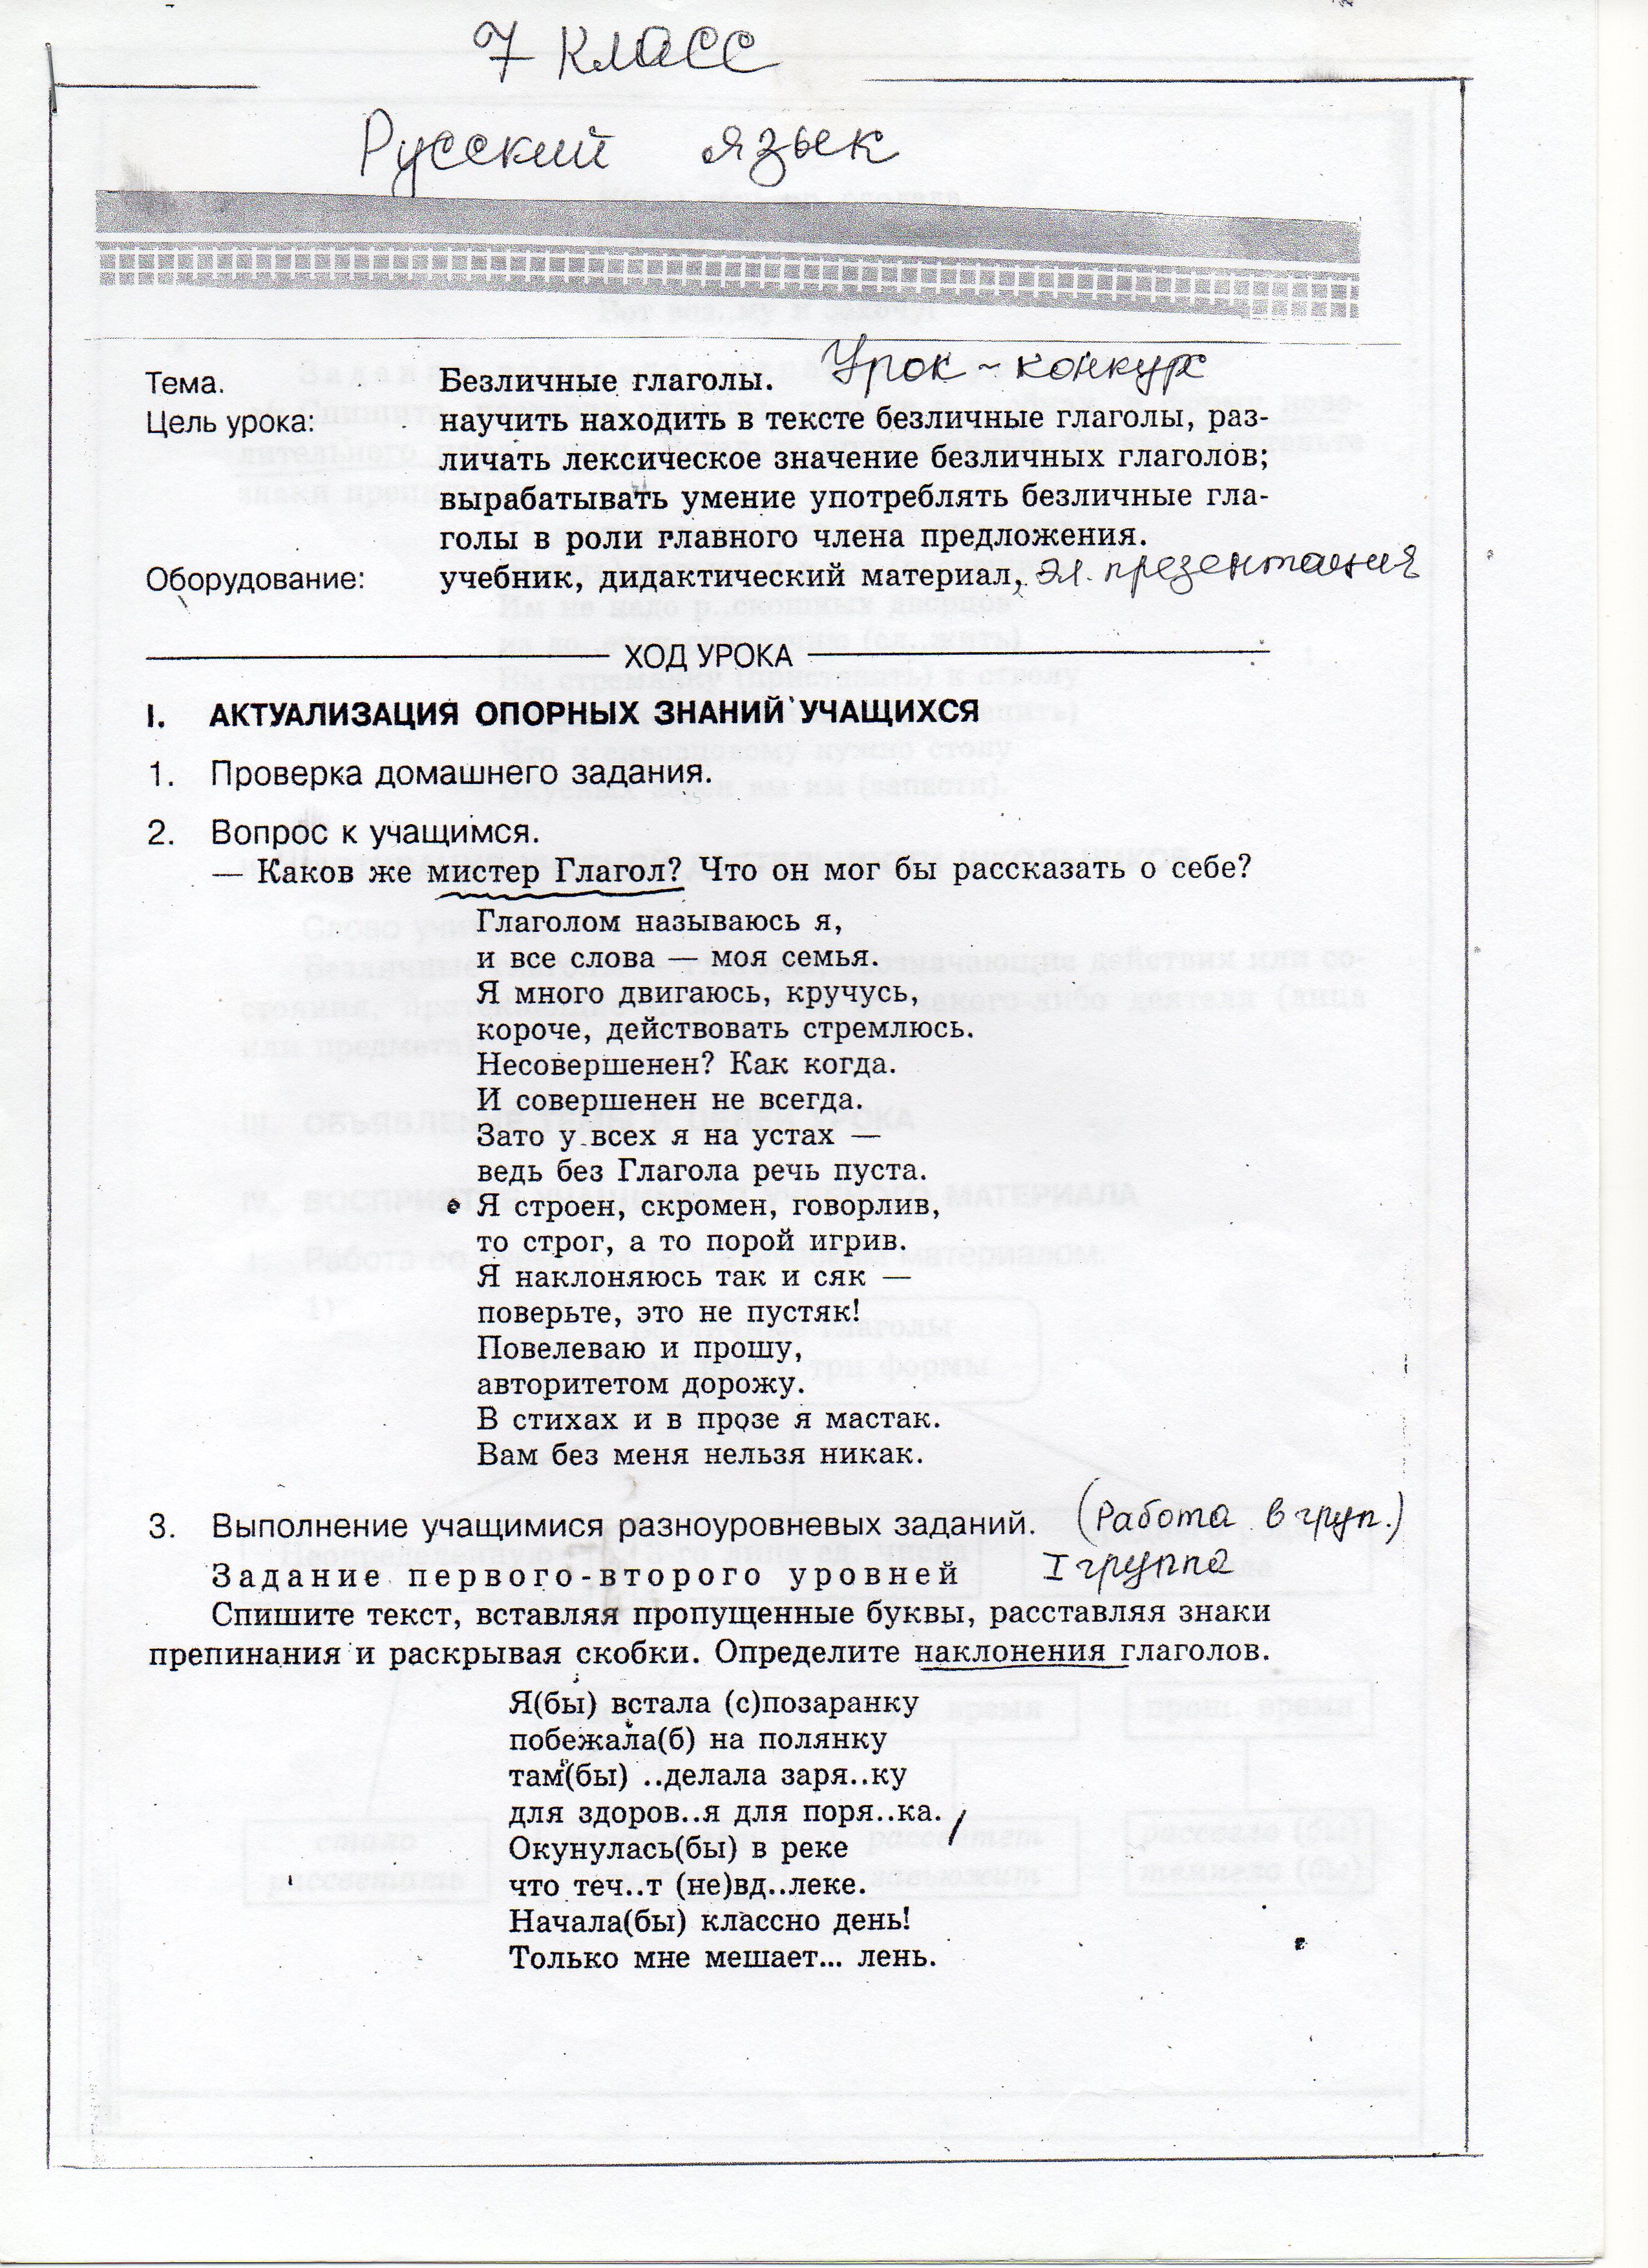 Конспект урока по русскому языку на тему: «Безличные глаголы»